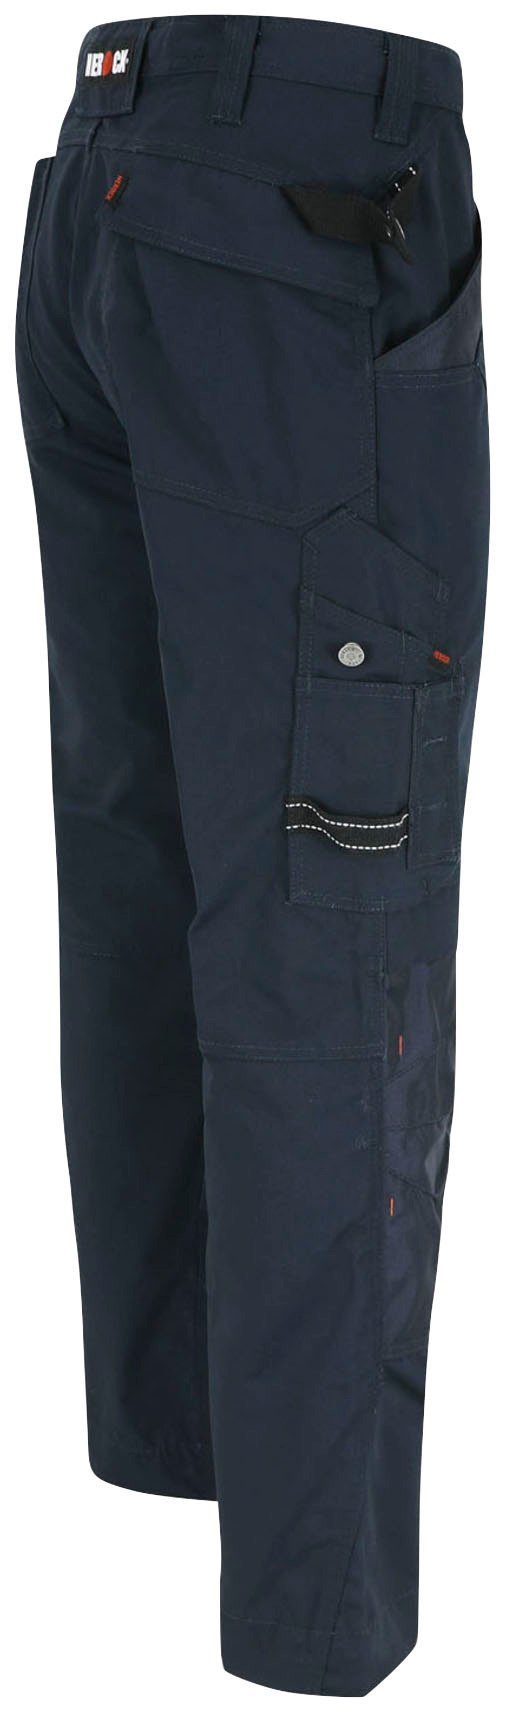 8 bequem - Hose marine Apollo - Bund Arbeitshose & Wasserabweisend Herock - leicht Regelbarer Taschen